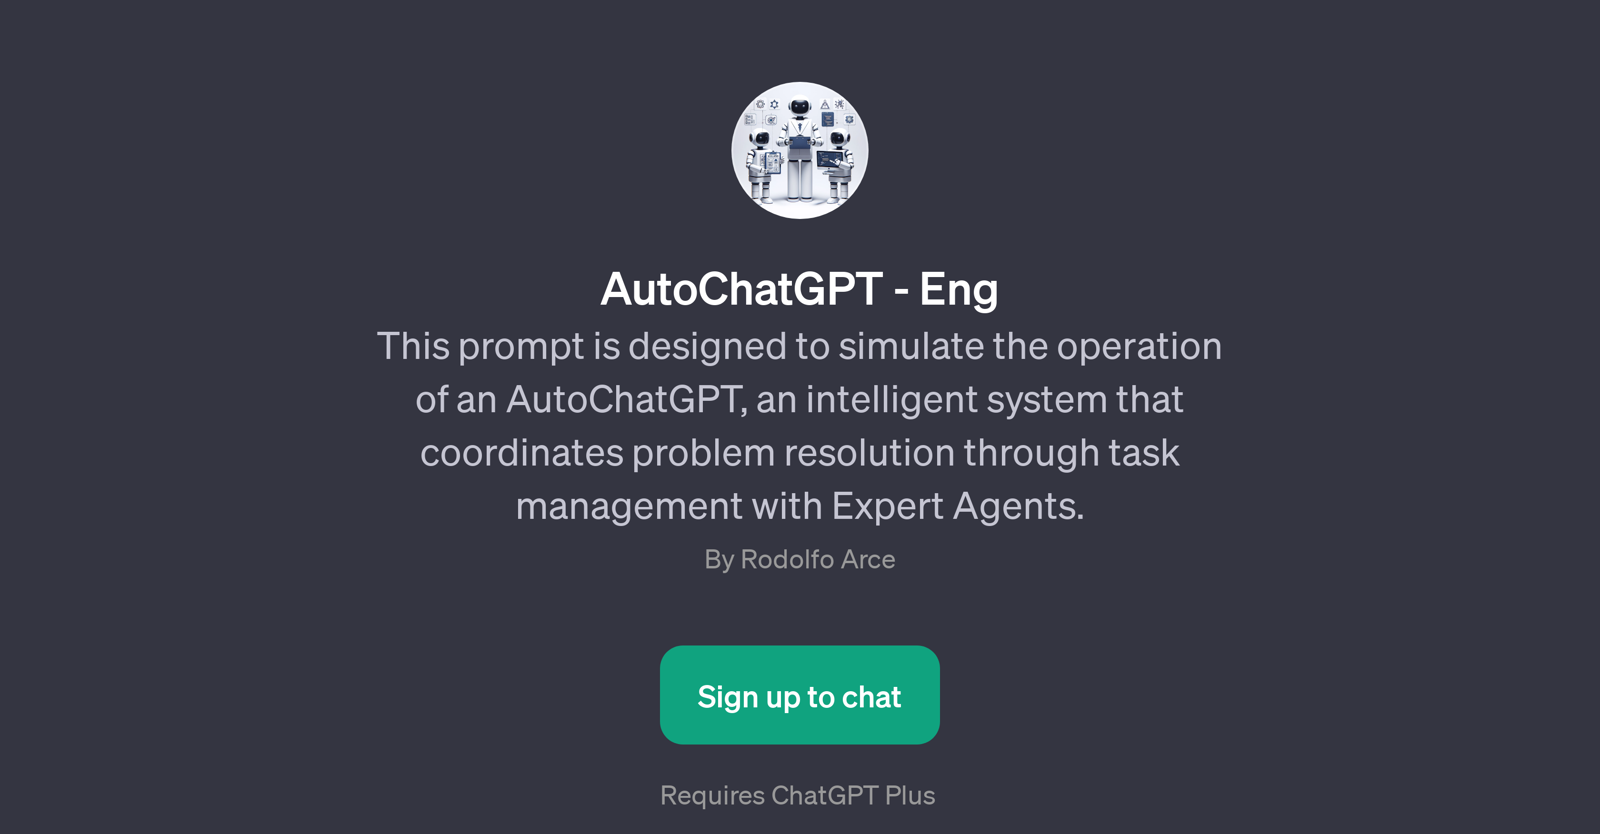 AutoChatGPT - Eng website